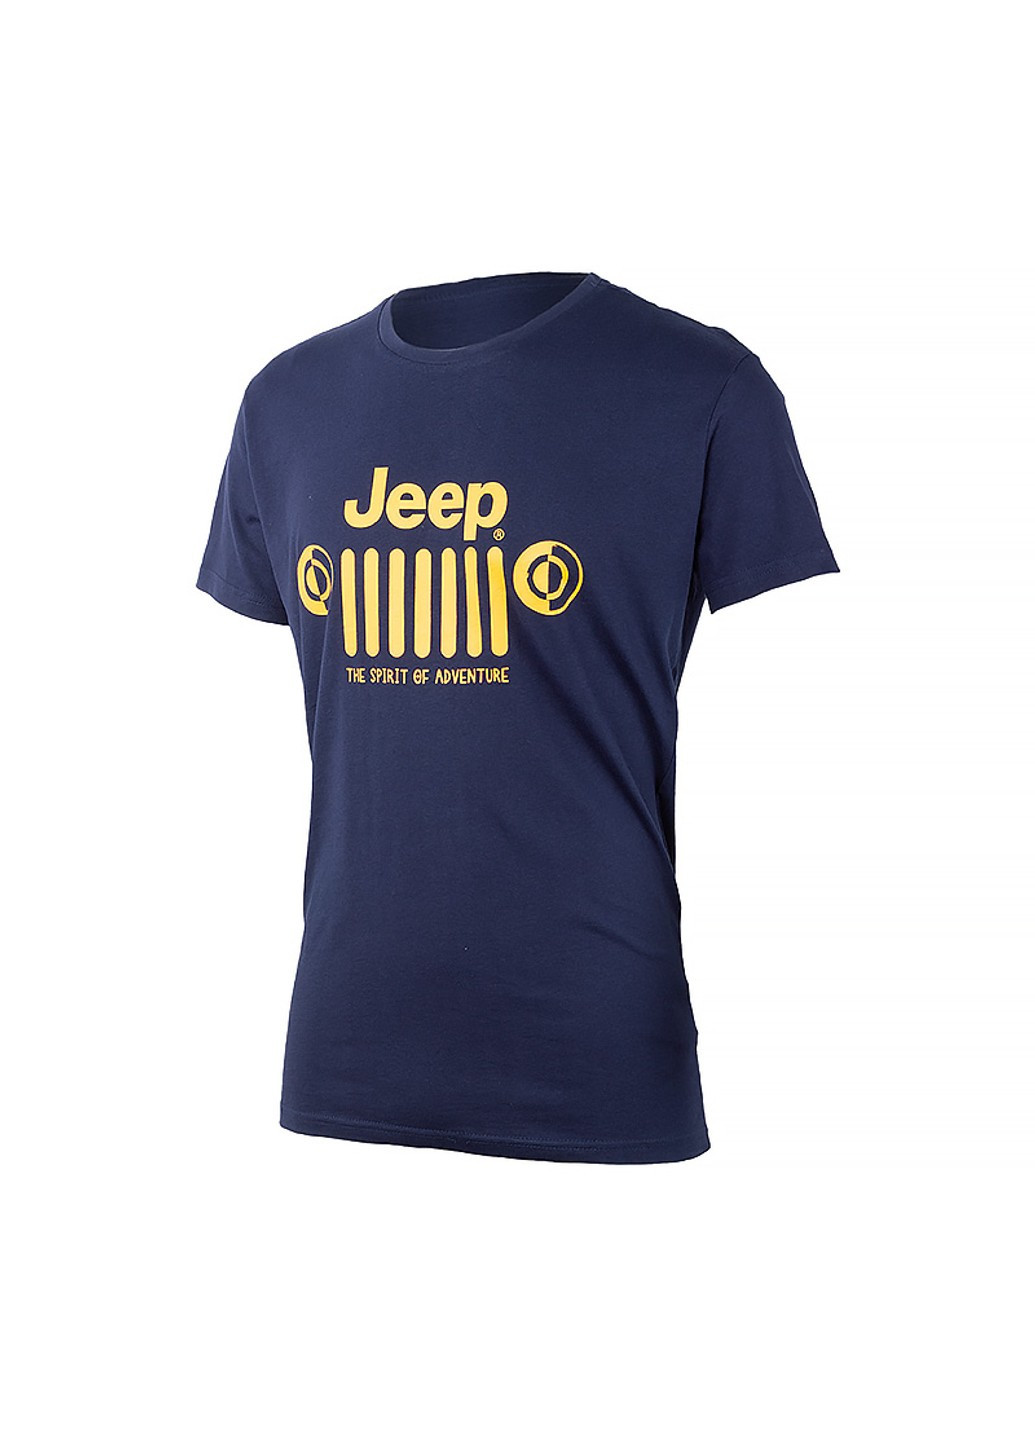 Синяя футболка t-shirt &grille Jeep